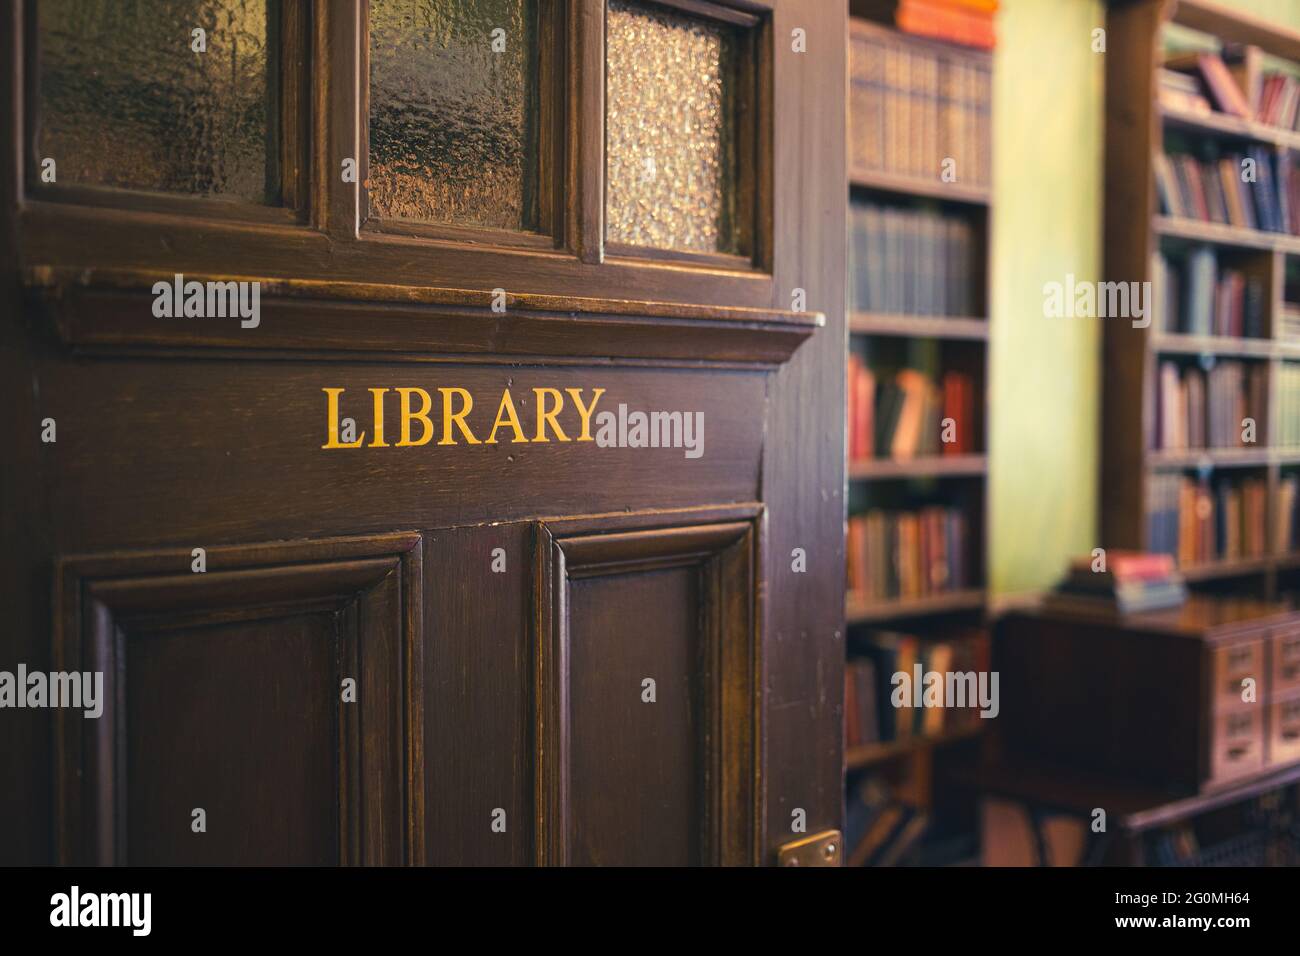 Ancien style début du XIXe siècle, porte de bibliothèque en bois teinté foncé incrustée de panneaux de verre dépoli, menant à une ancienne bibliothèque Banque D'Images